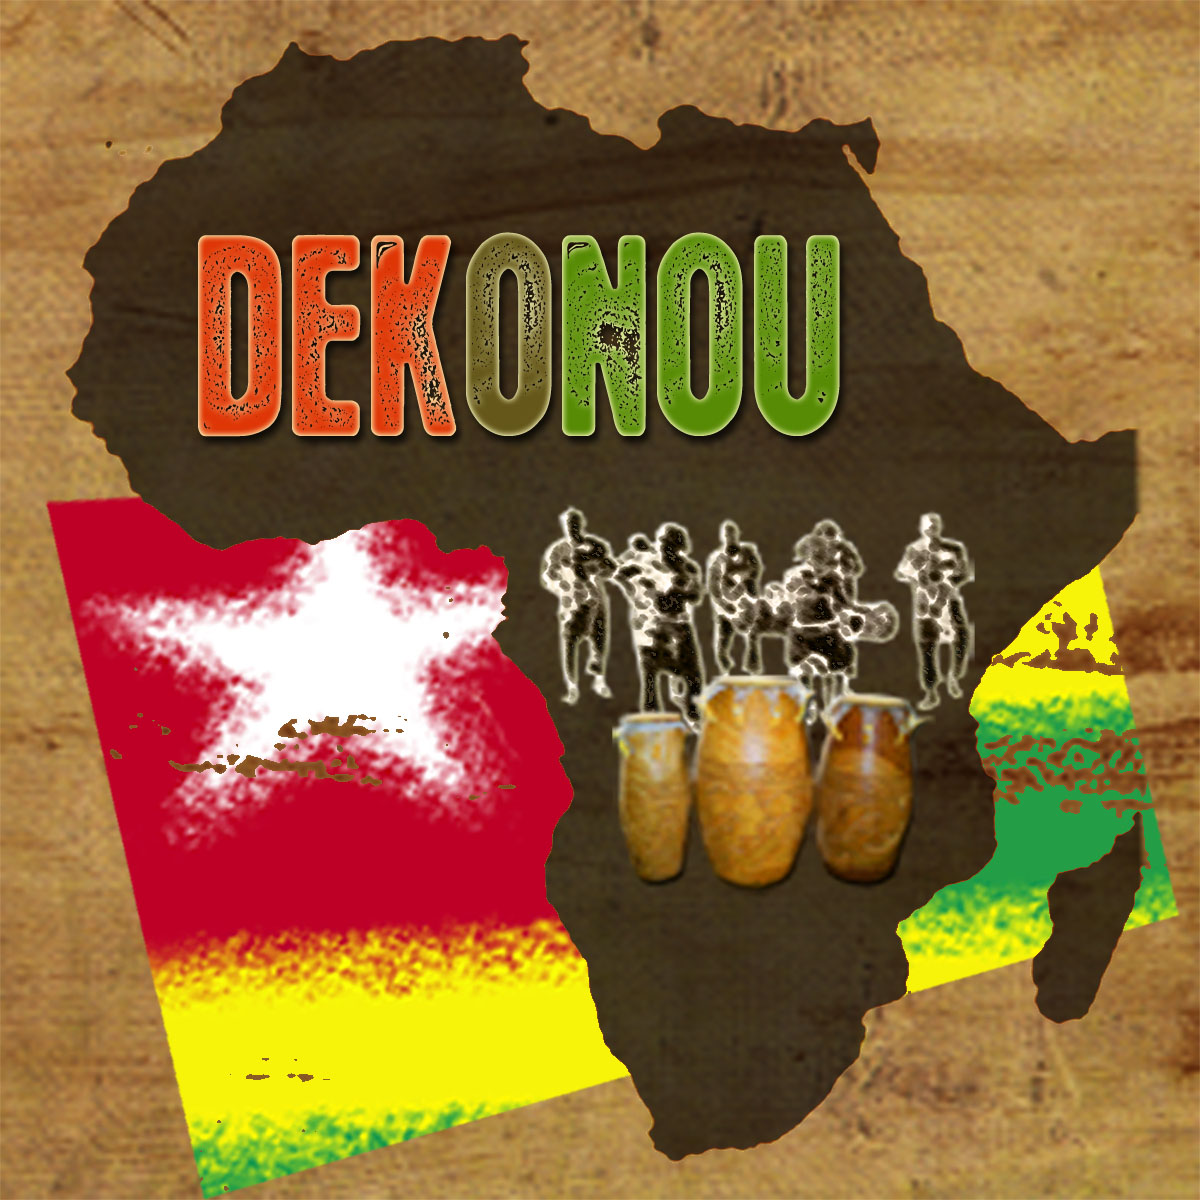 Association Dekonou